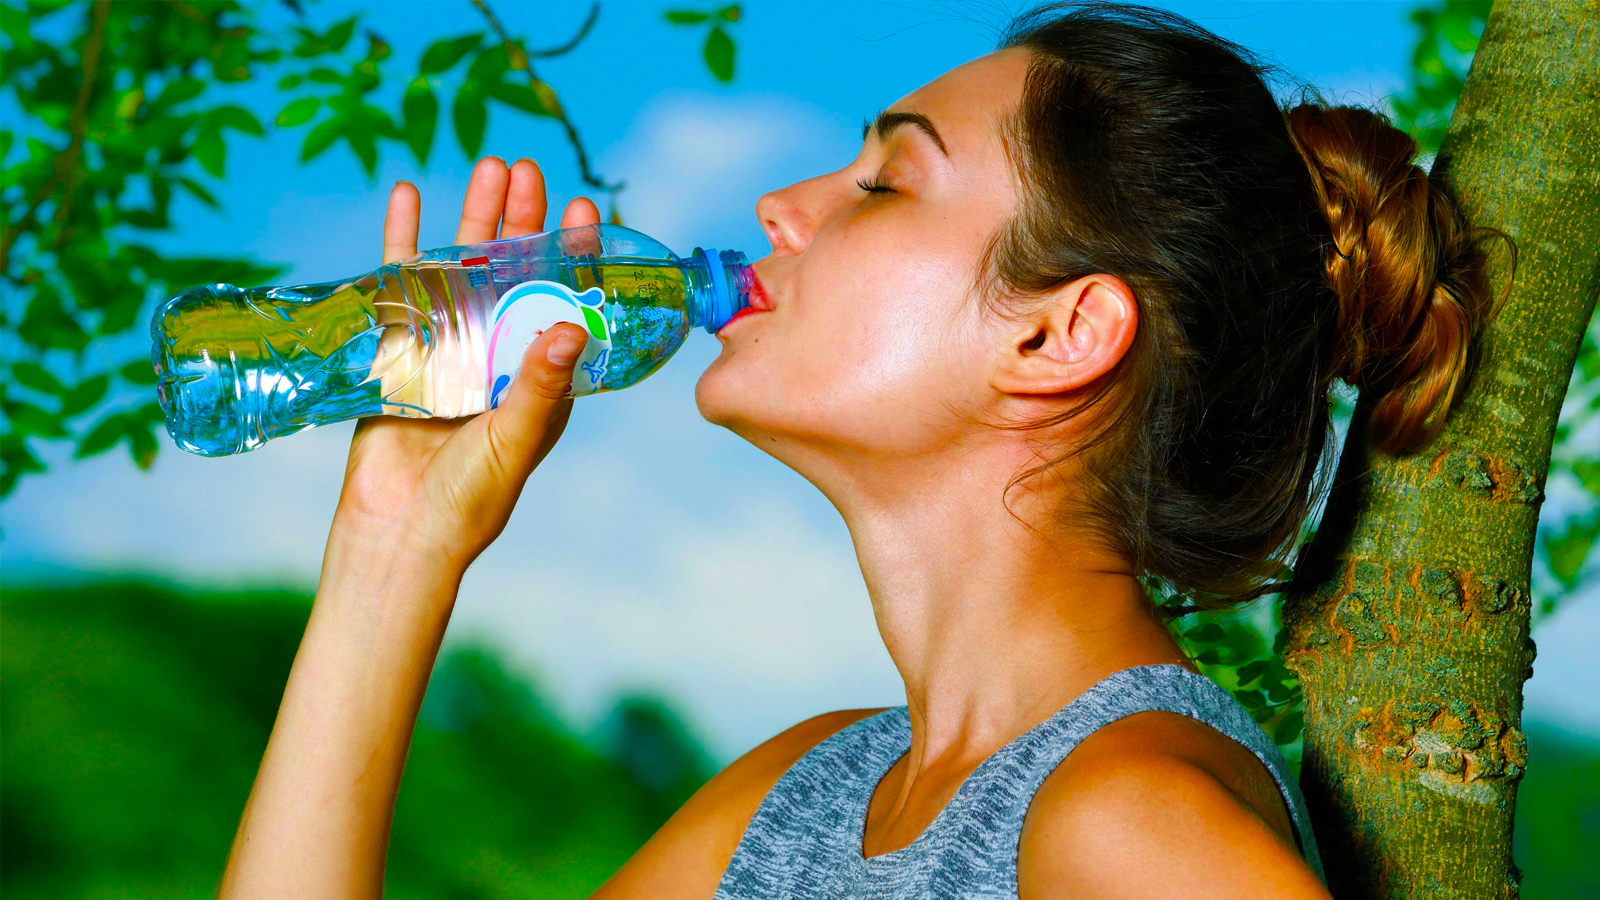 વધુ પડતું પાણી પીવું તમારા સ્વાસ્થ્ય માટે હાનિકારક, જાણો શું છે તેના લક્ષણો